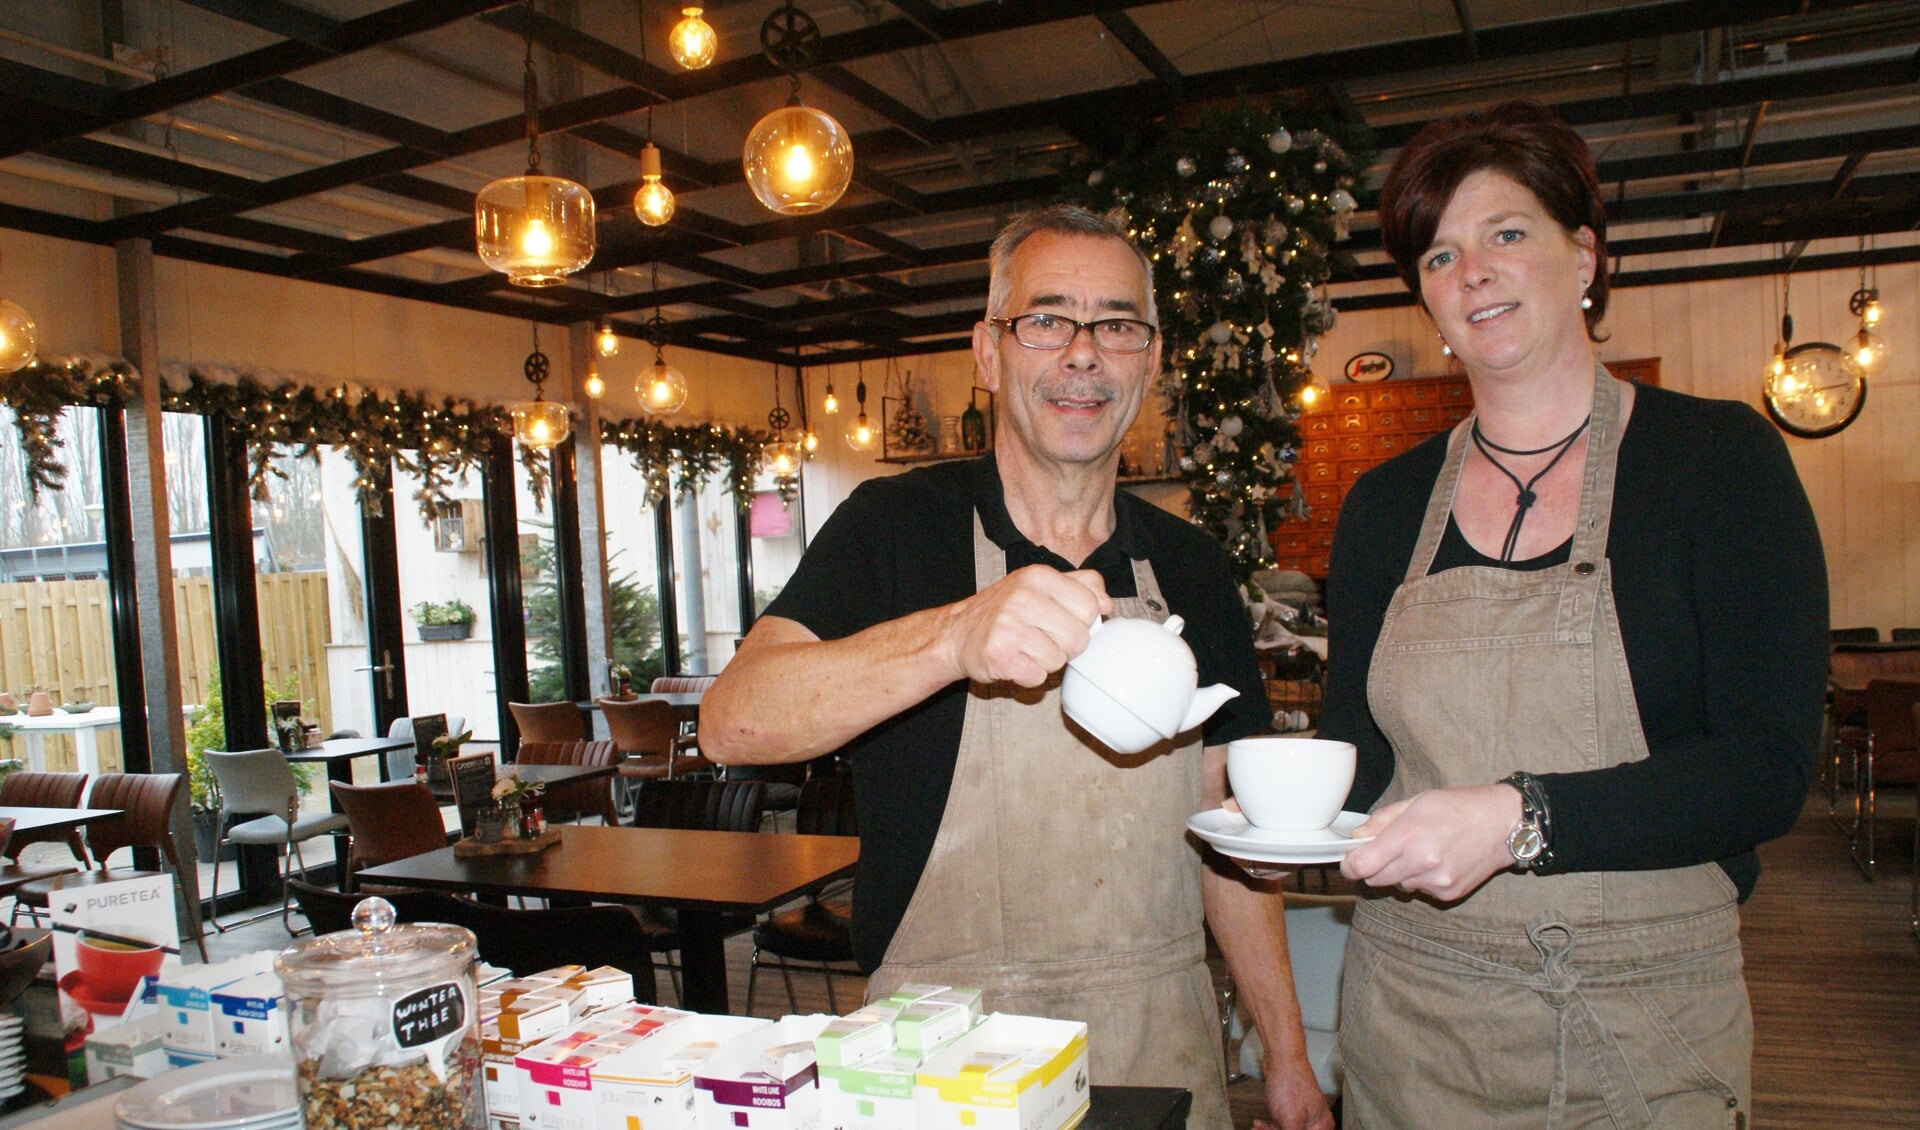 High Tea 'FF Bijkletsen' in het Tuincafé van GroenRijk 't Haantje, met links Dick Houtkamp en rechts Sandra Poth.